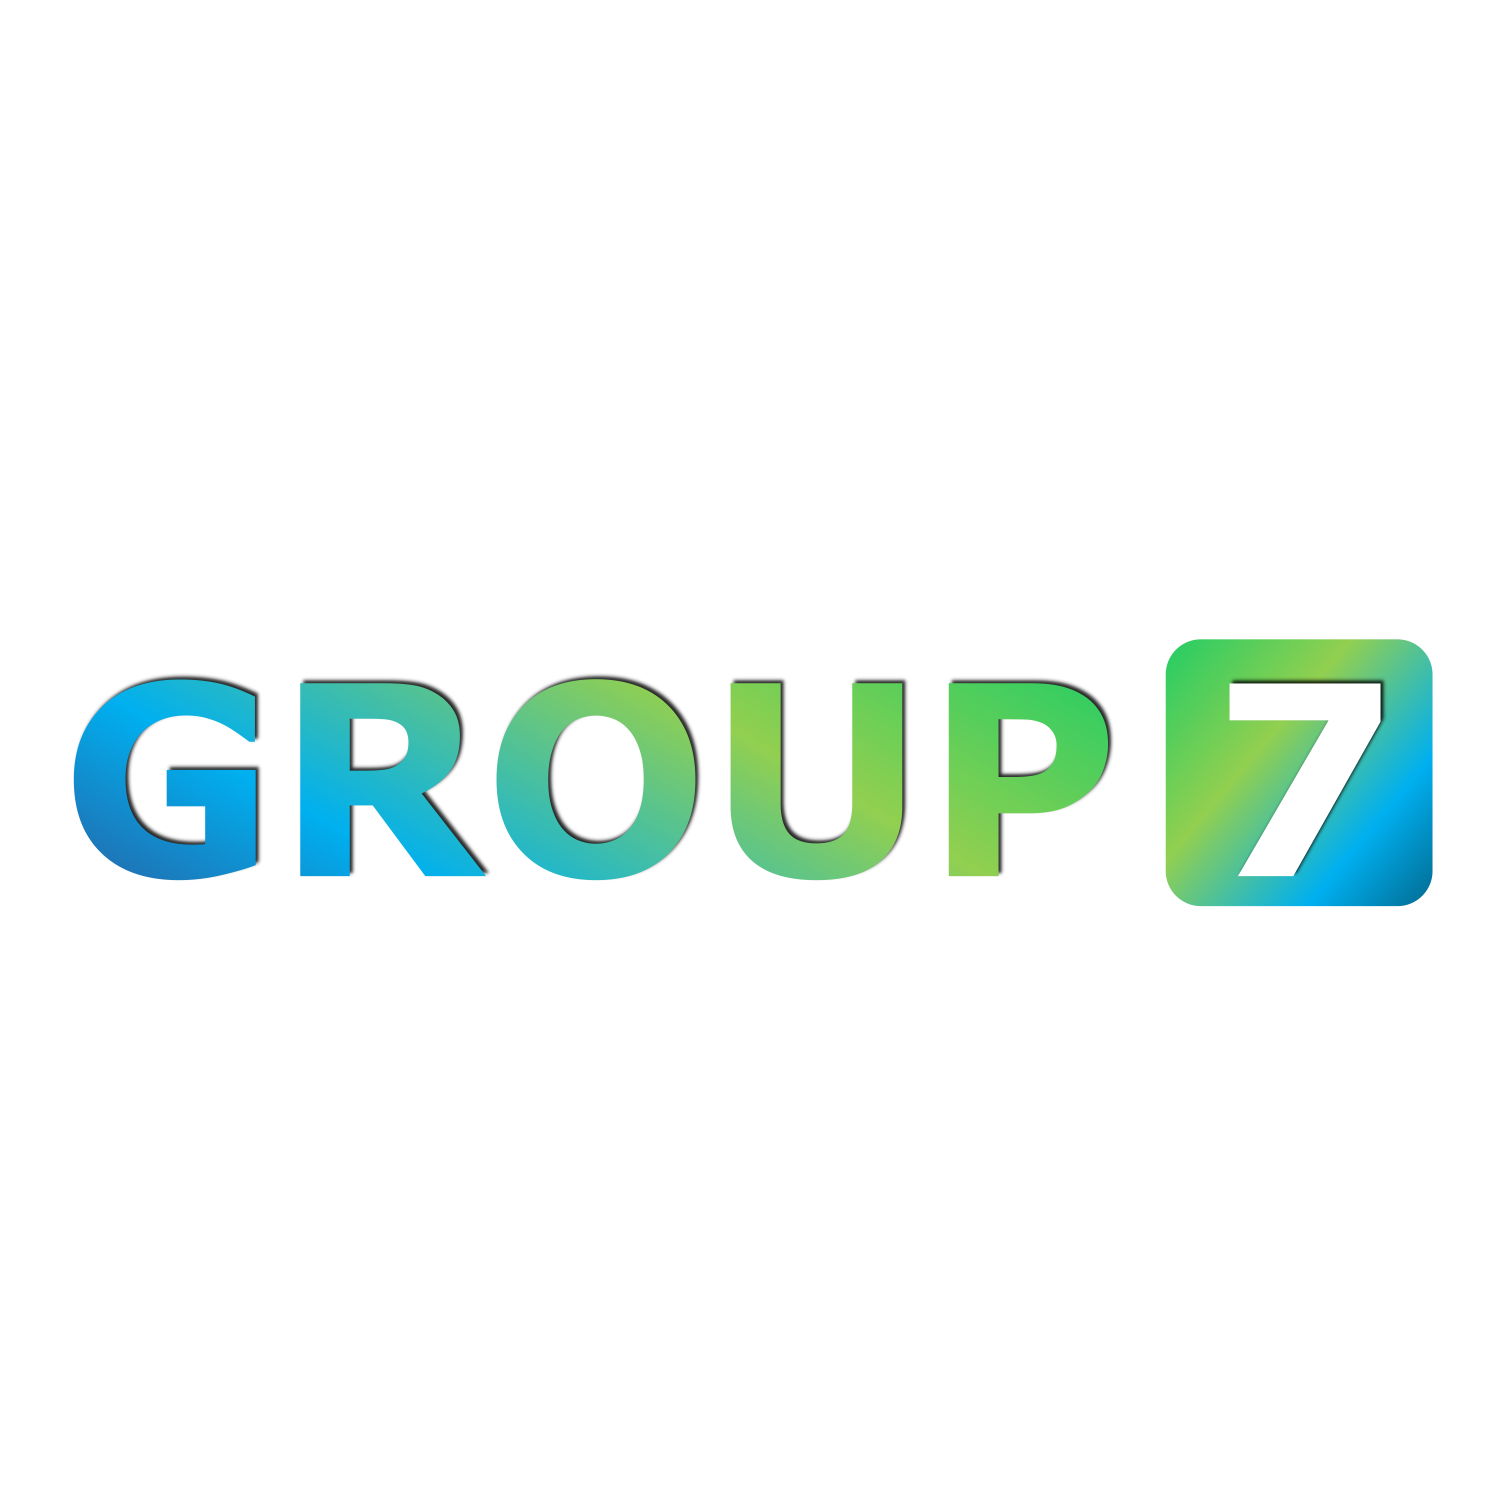 GROUP SEVEN logo